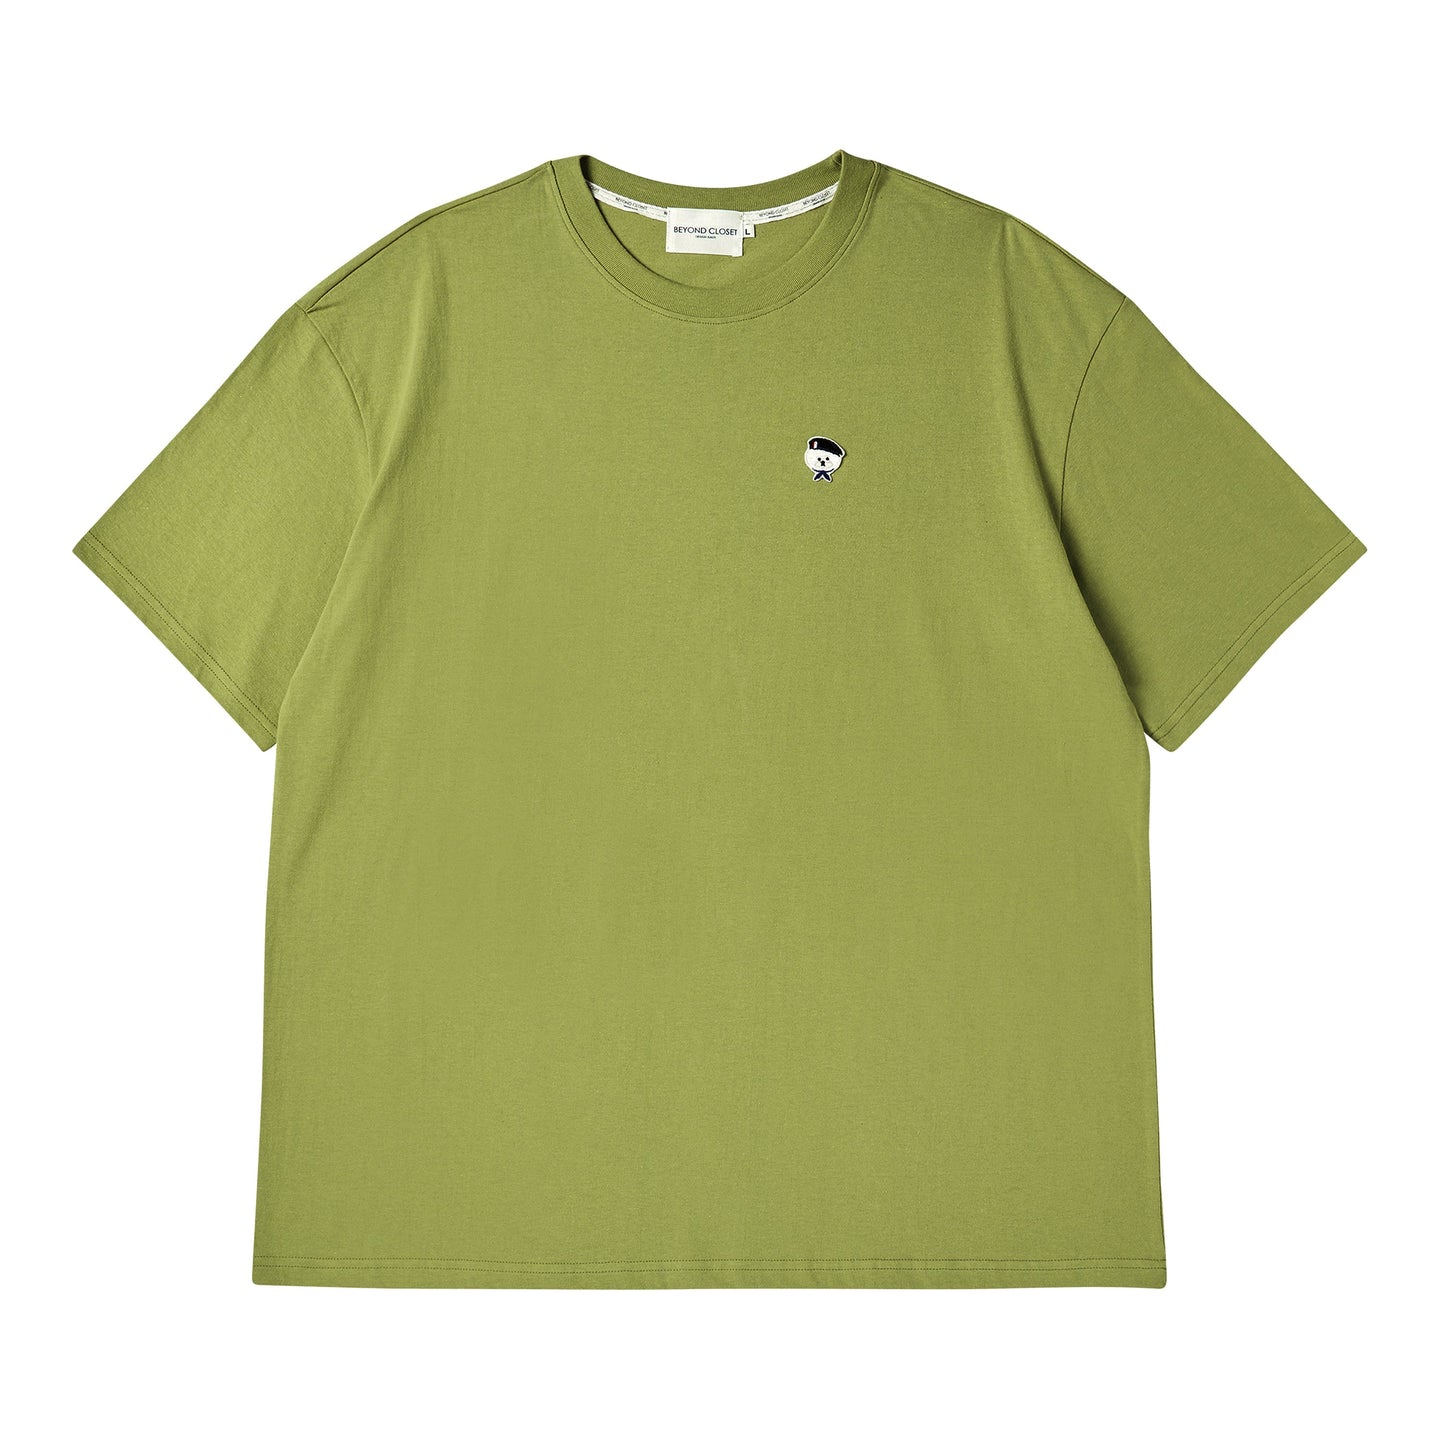 BEYOND CLOSET New Parisian T-Shirt Green